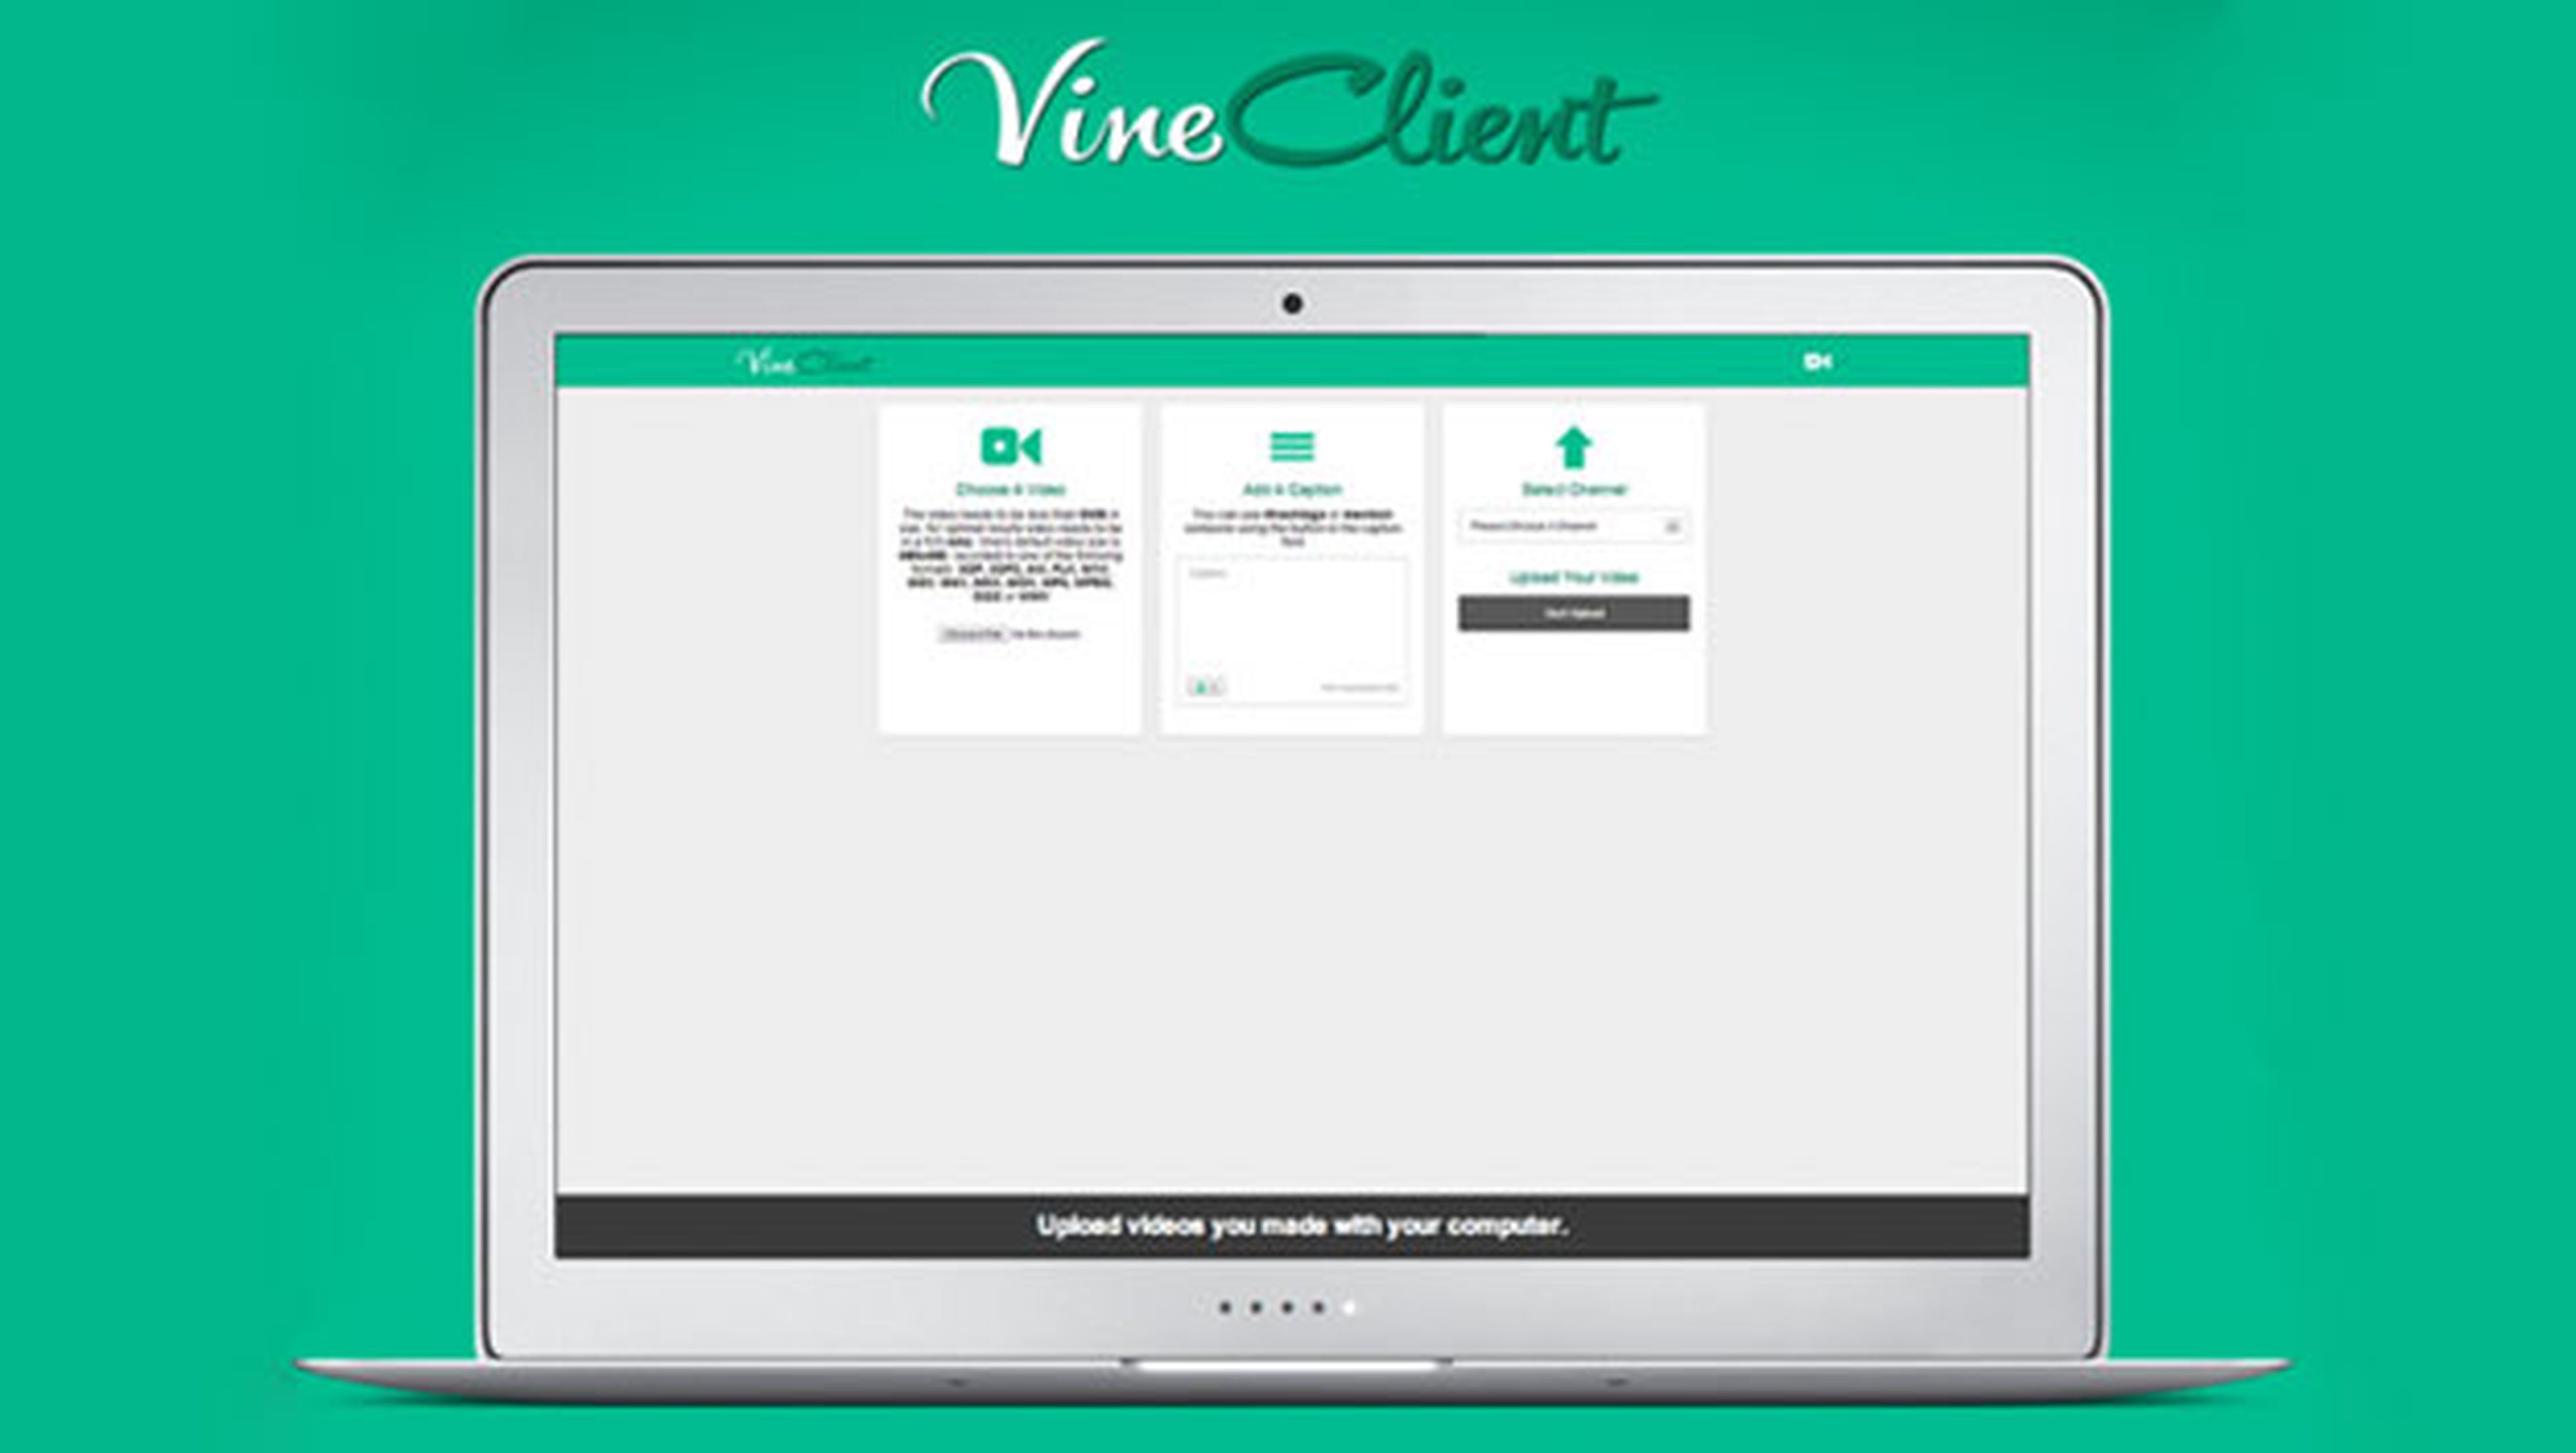 VineClient